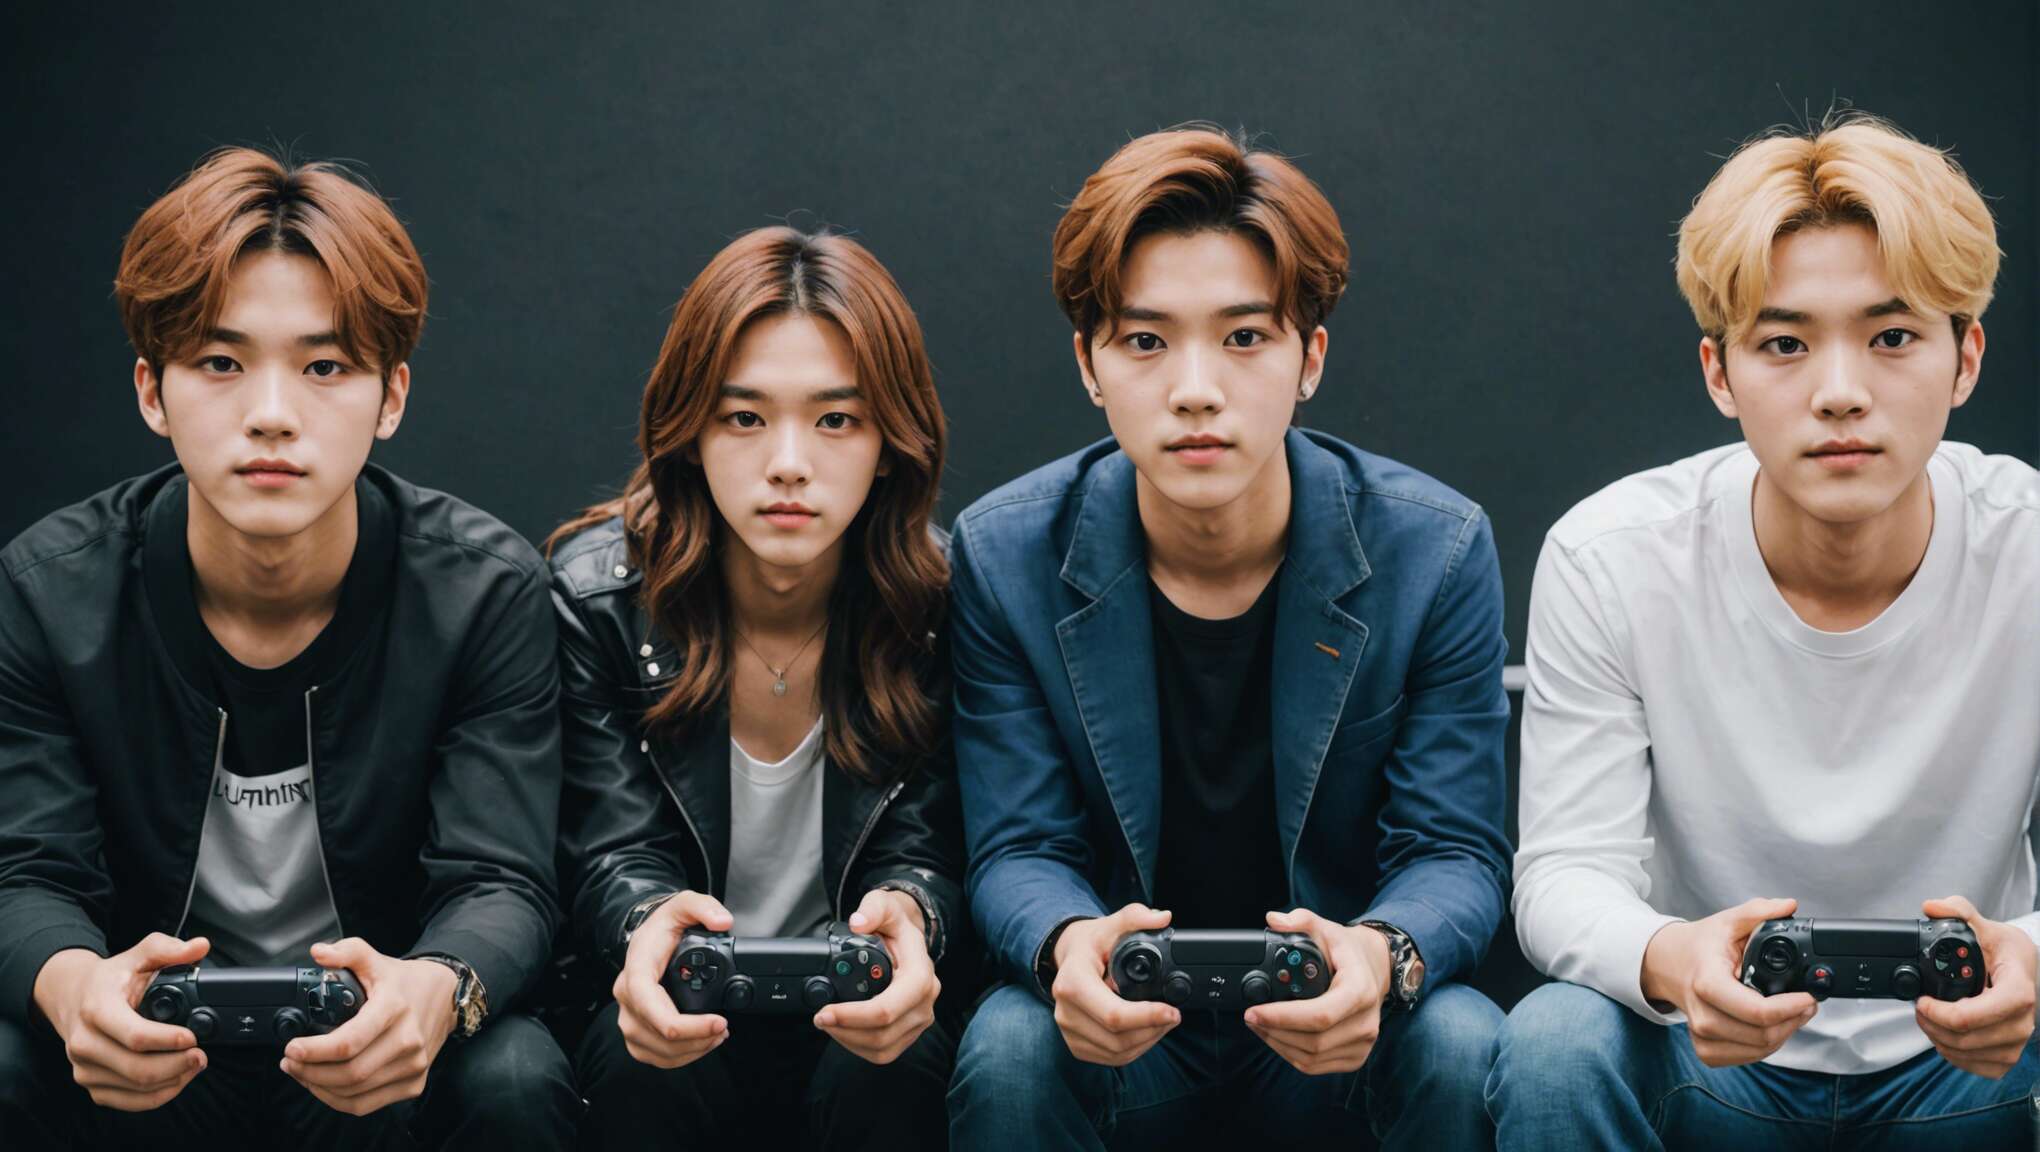 Les idols k-pop, ces nouveaux influenceurs dans le monde du gaming